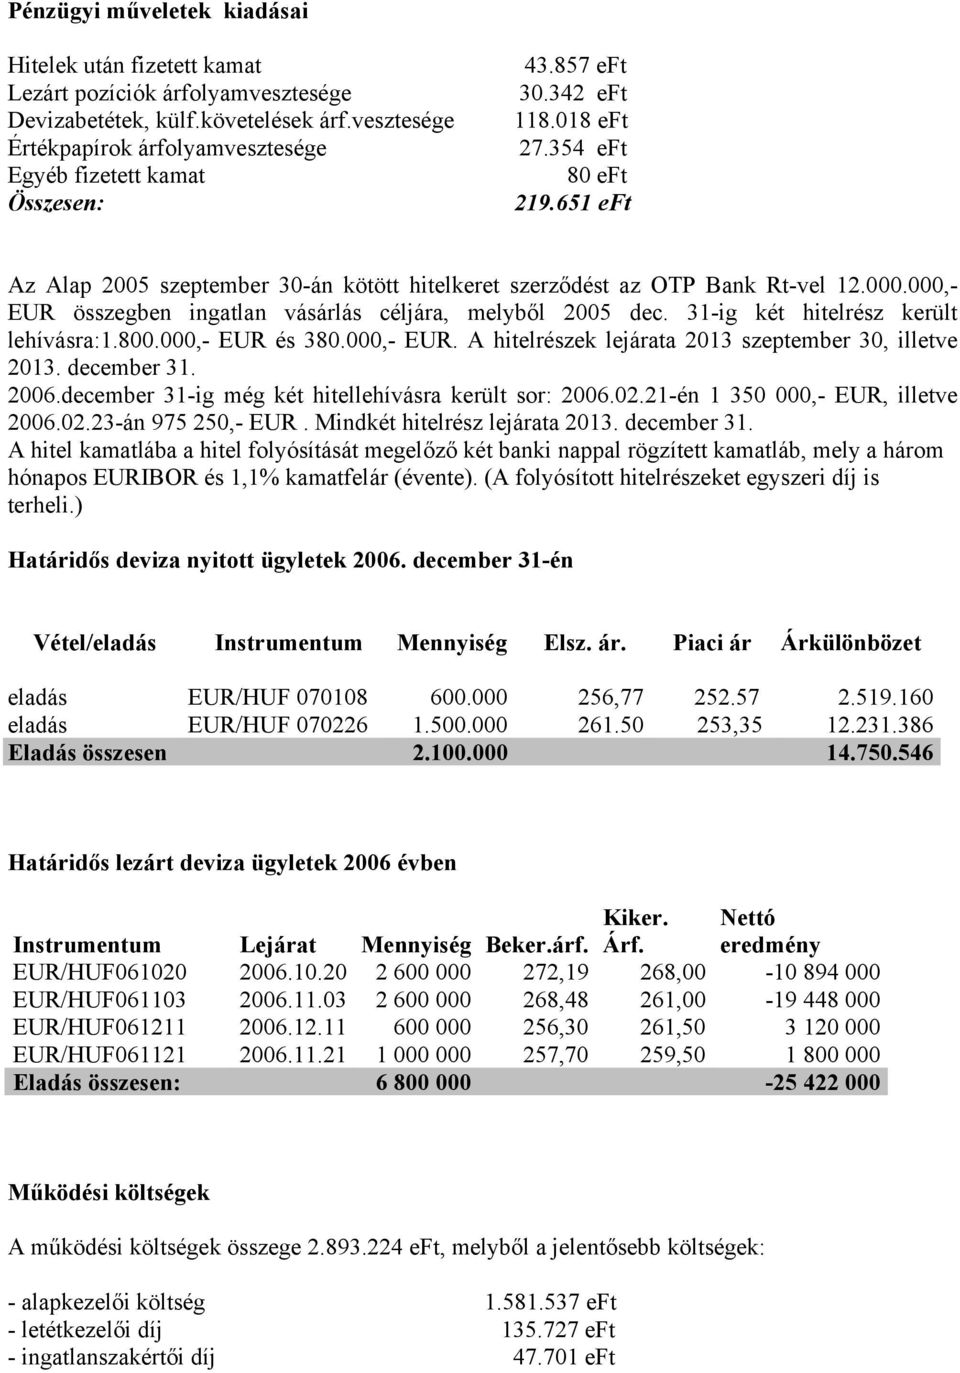 651 eft Az Alap 2005 szeptember 30-án kötött hitelkeret szerződést az OTP Bank Rt-vel 12.000.000,- EUR összegben ingatlan vásárlás céljára, melyből 2005 dec. 31-ig két hitelrész került lehívásra:1.